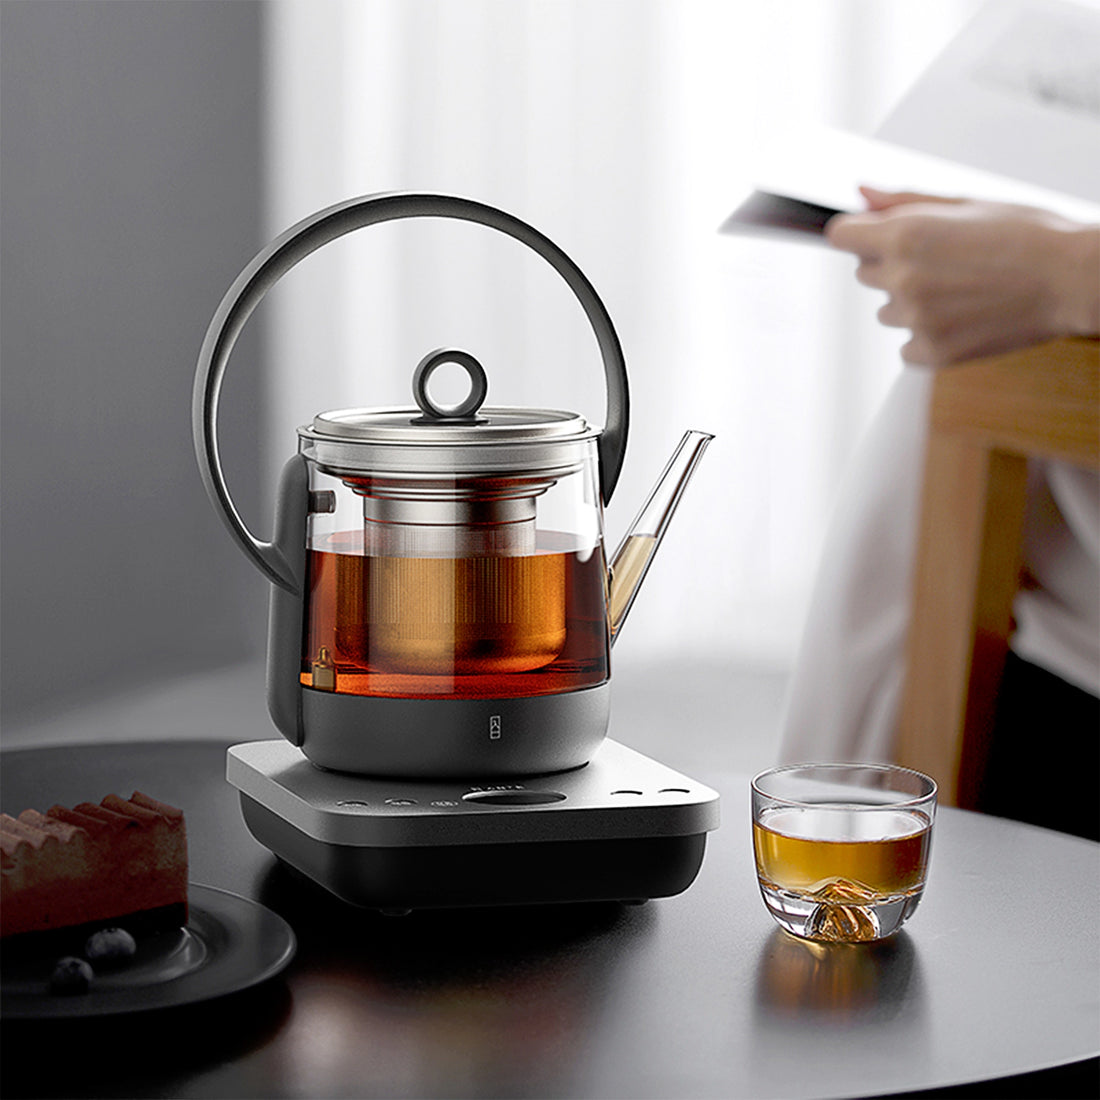 zens smart tea kettle